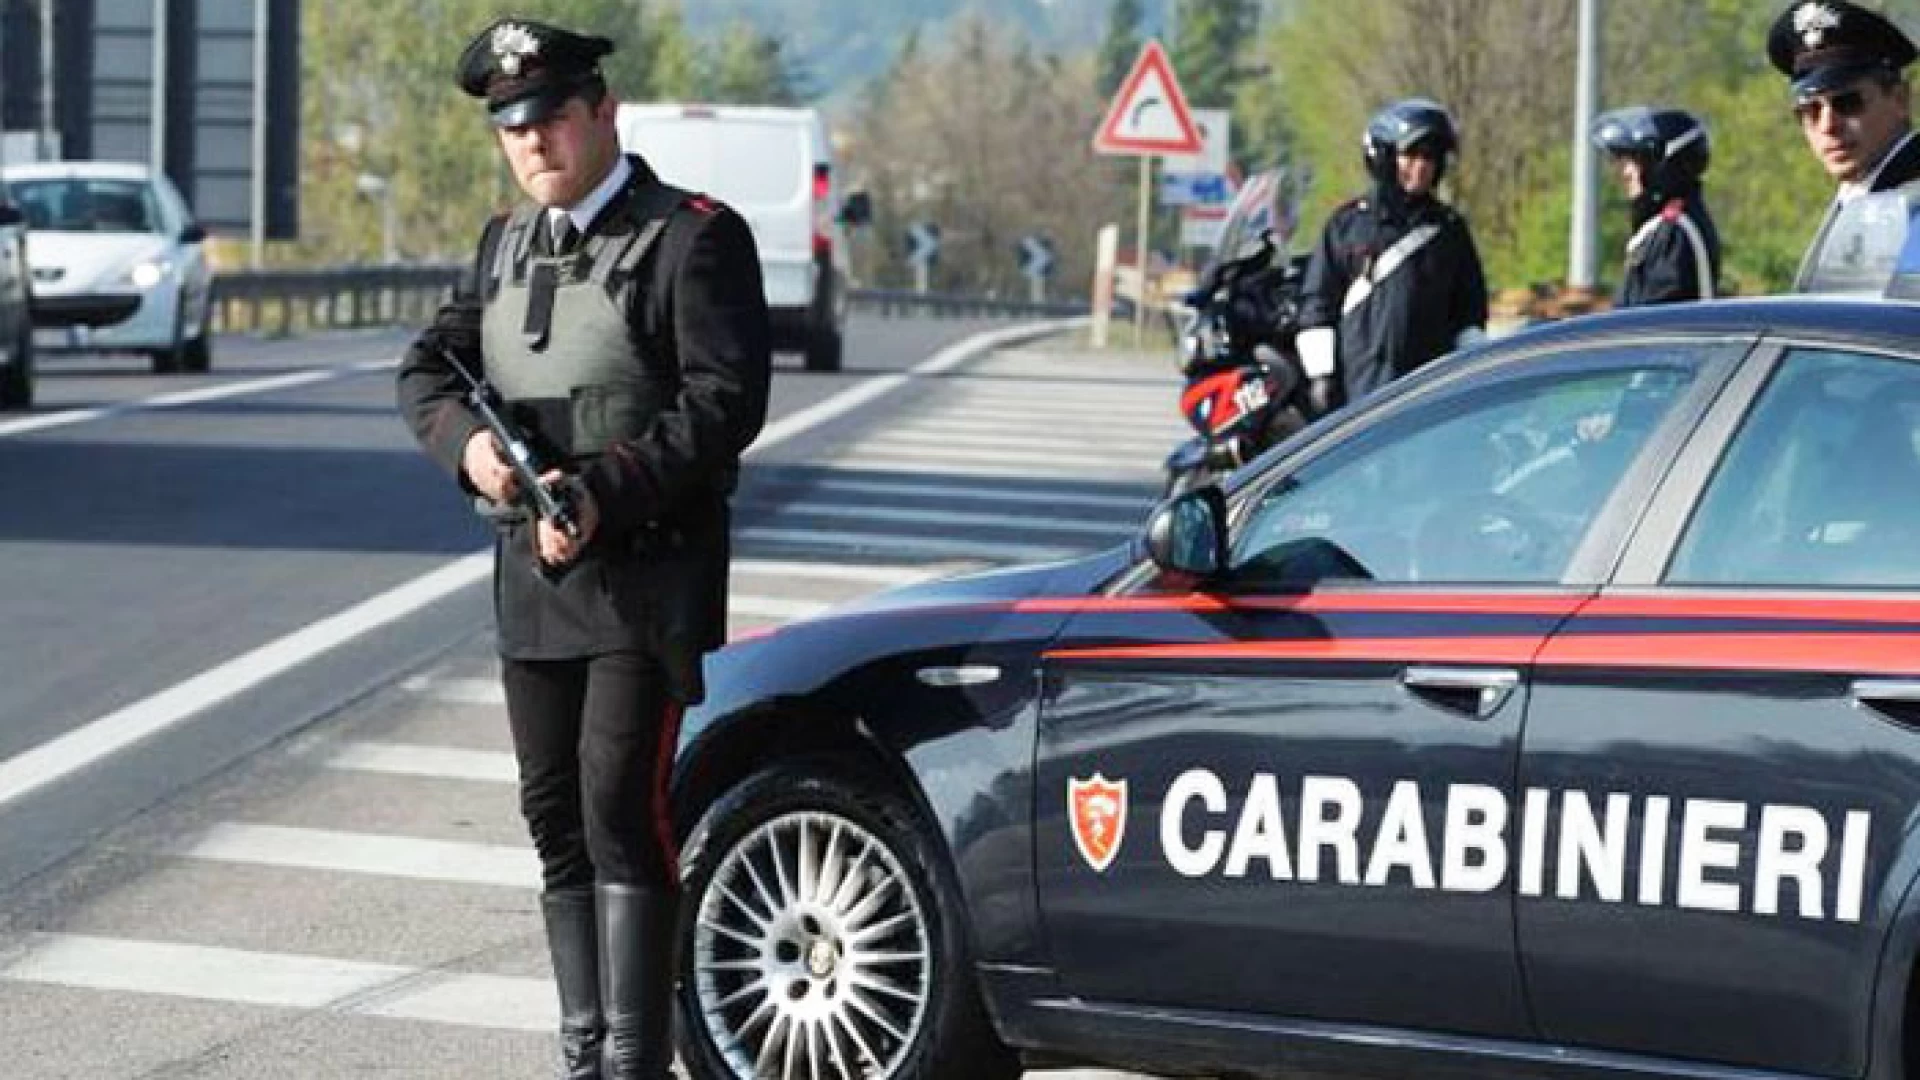 Isernia: Controlli straordinari dei Carabinieri per prevenire furti in abitazioni, truffe, accattonaggio presso attività commerciali ed altri reati predatori.